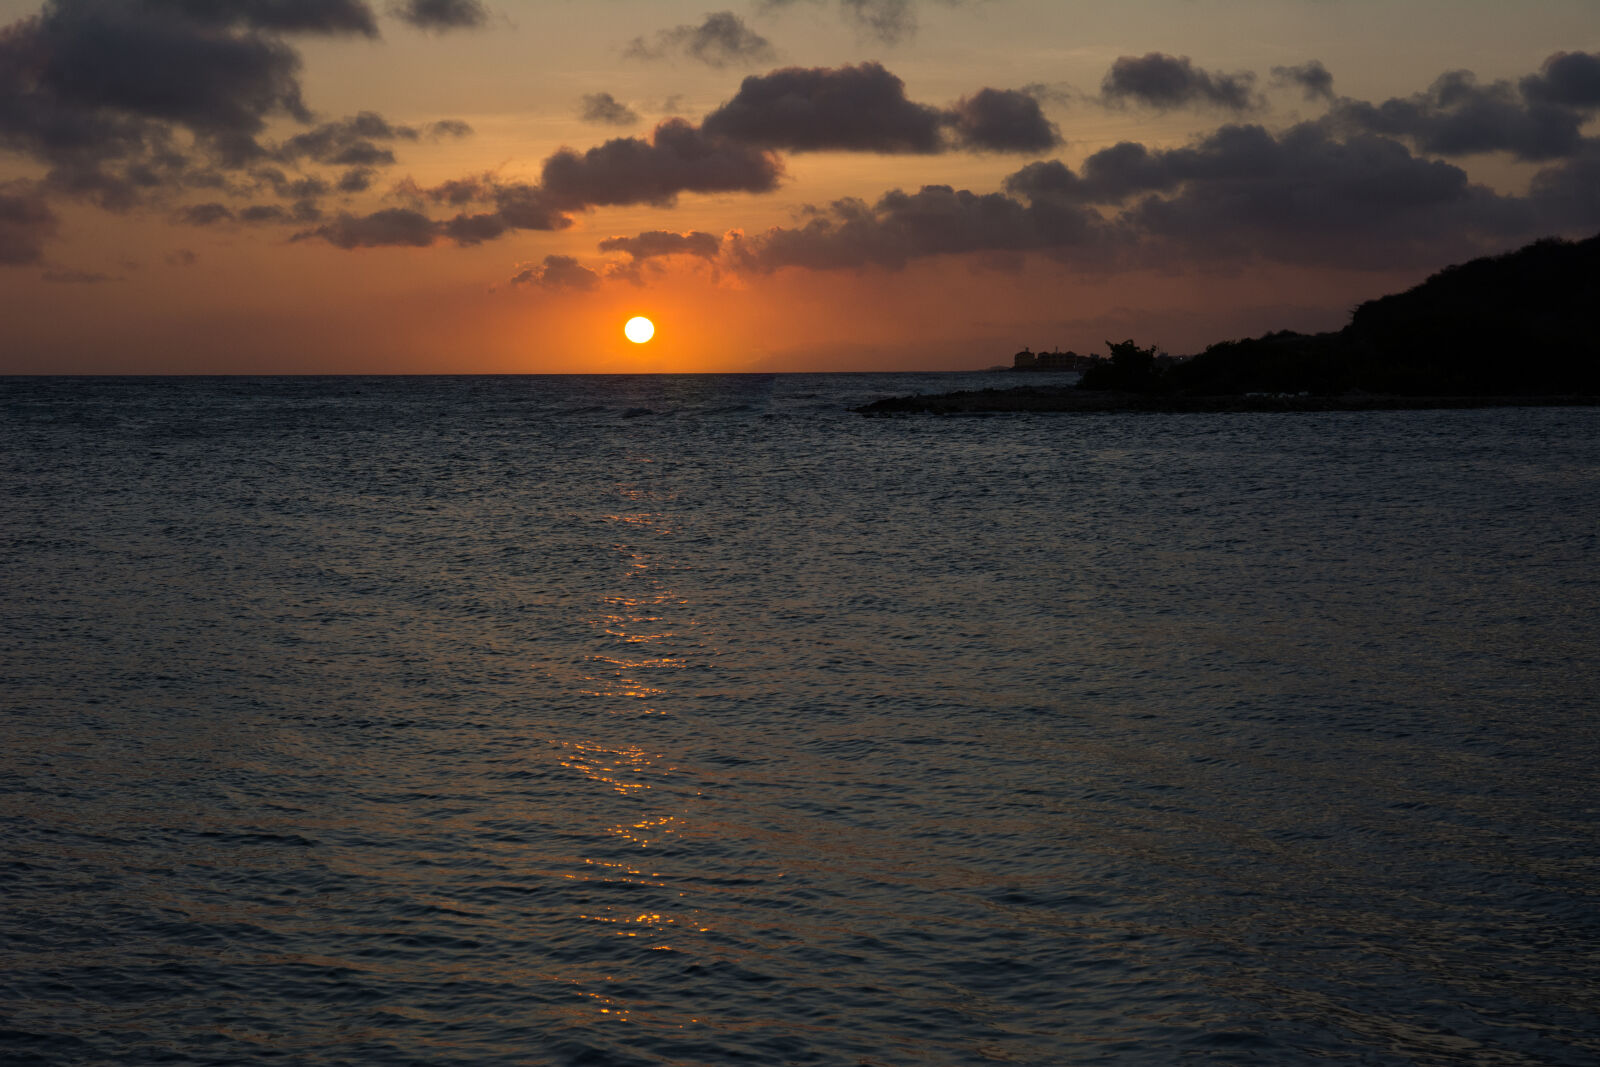 Nikon D7100 + Nikon AF-S DX Nikkor 16-85mm F3.5-5.6G ED VR sample photo. Sea, sunset, ocean, twilight photography